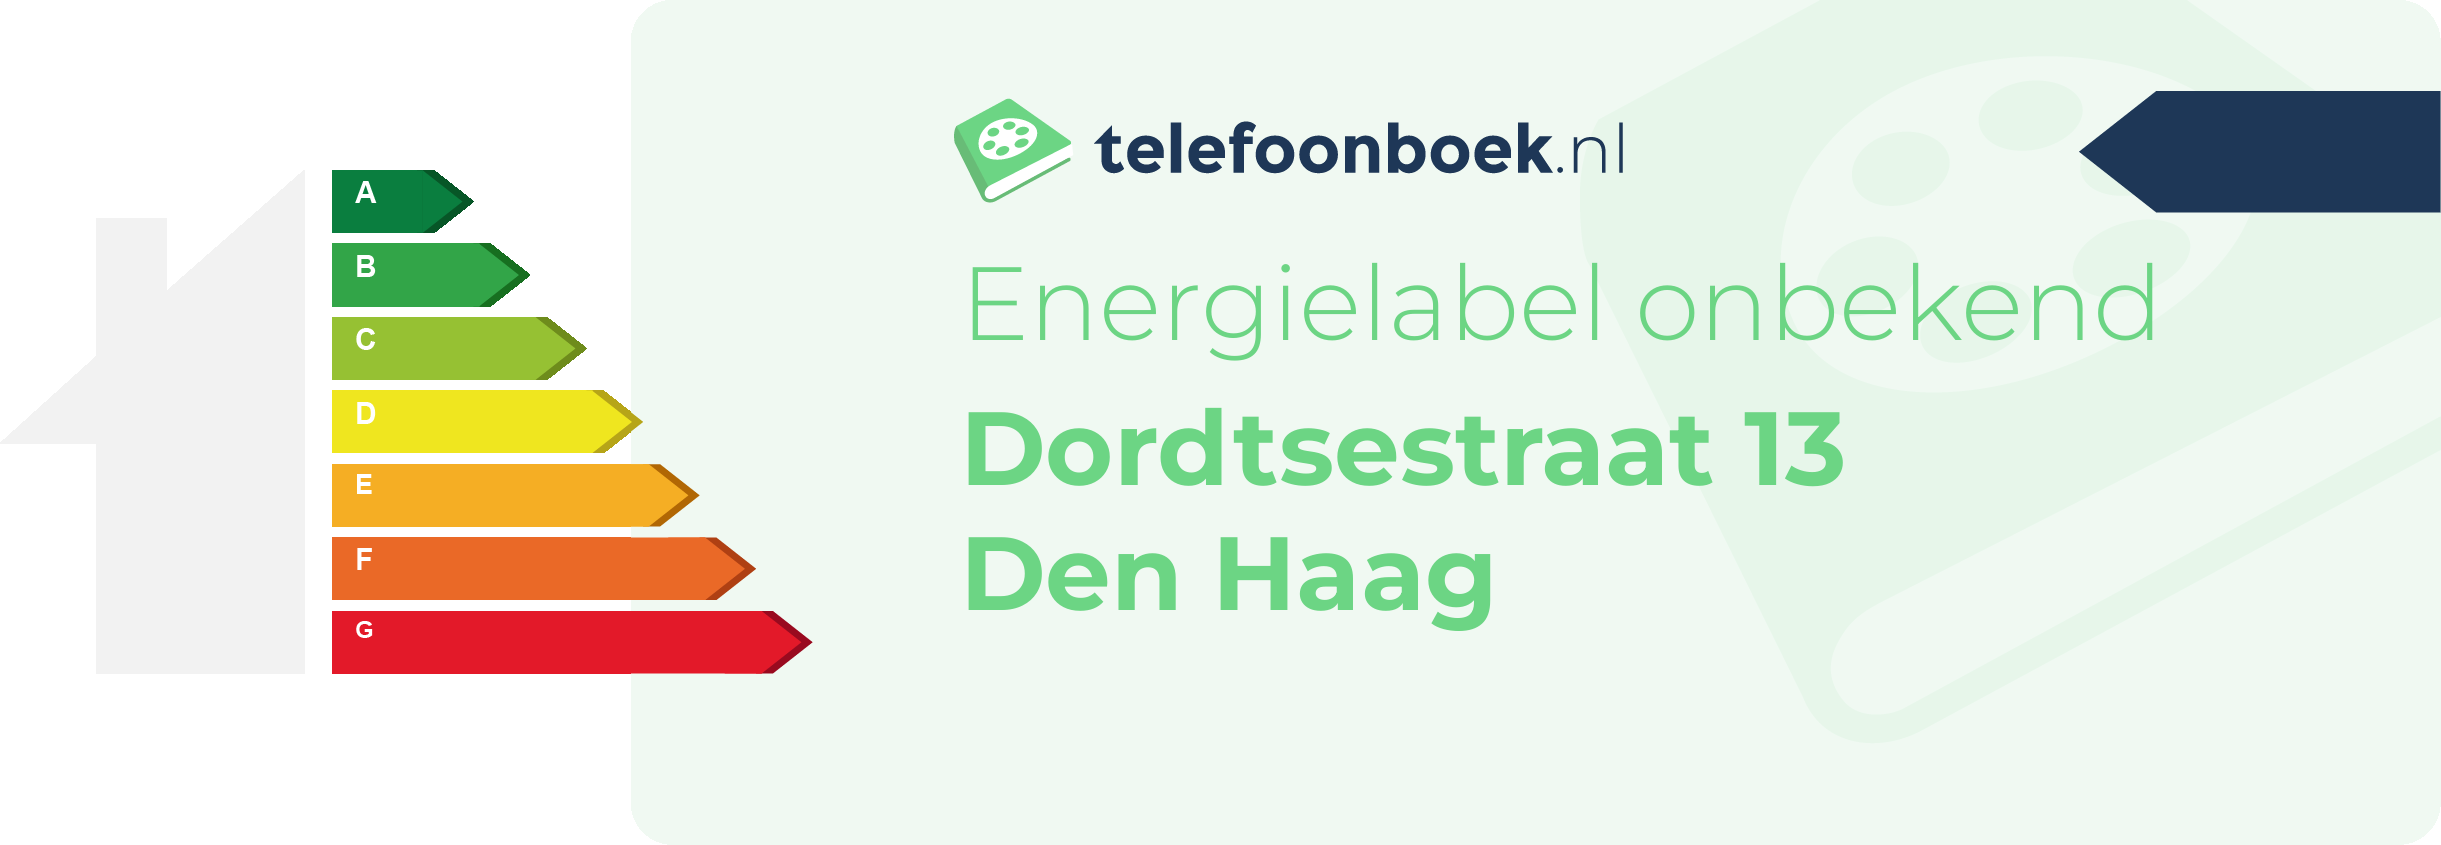 Energielabel Dordtsestraat 13 Den Haag